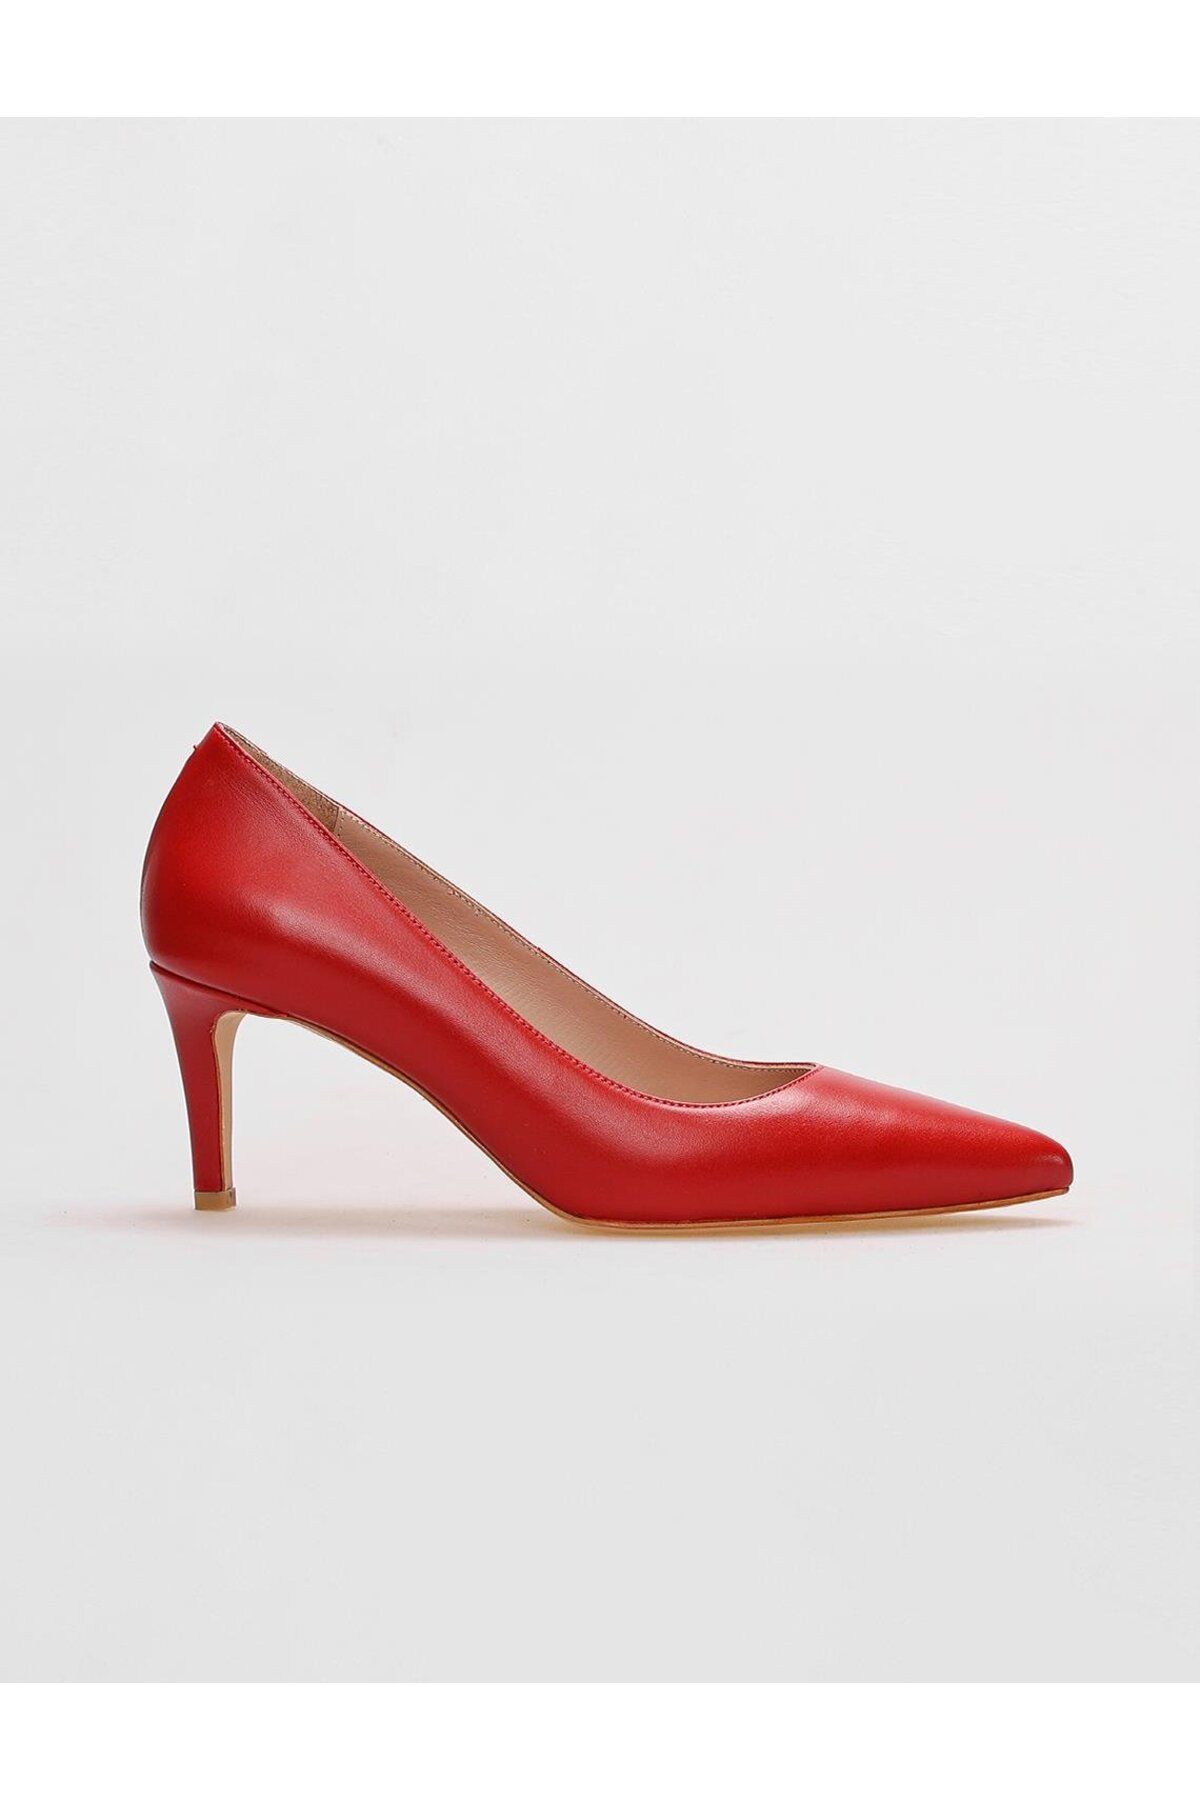 Cabani Hakiki Deri Kırmızı Kadın Topuklu Ayakkabı